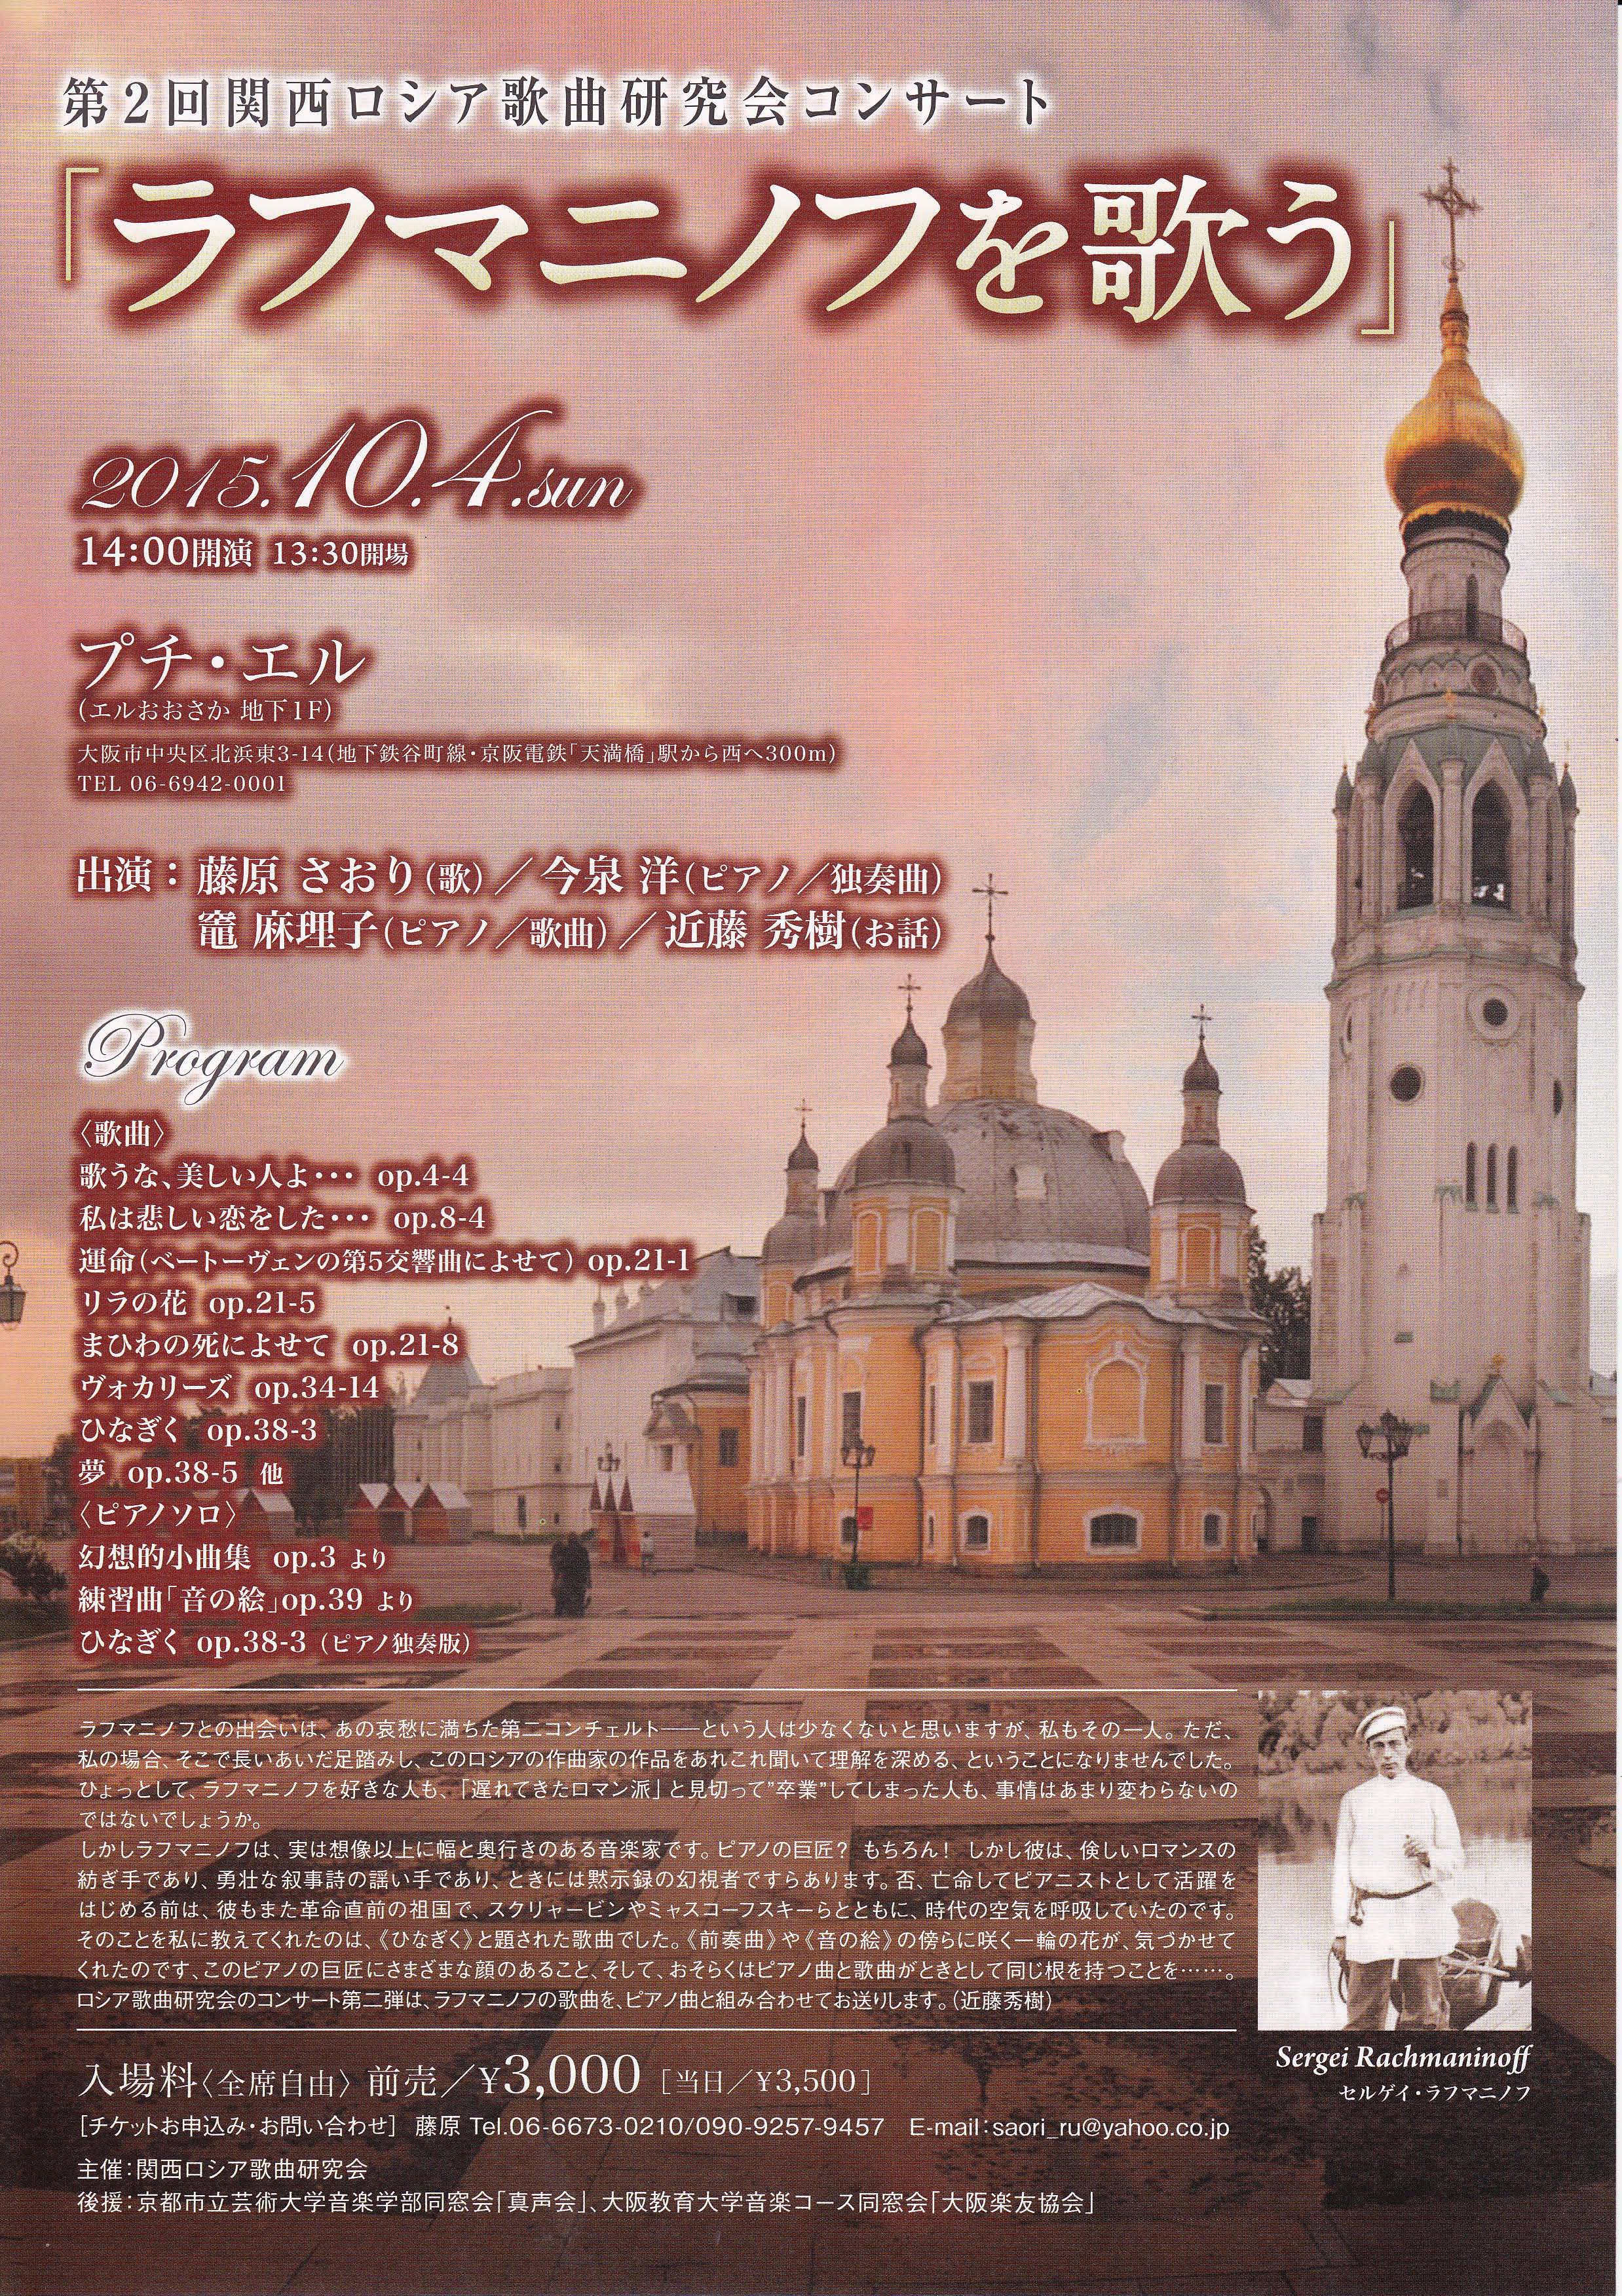 第2回関西ロシア歌曲研究会コンサート「ラフマニノフを歌う」